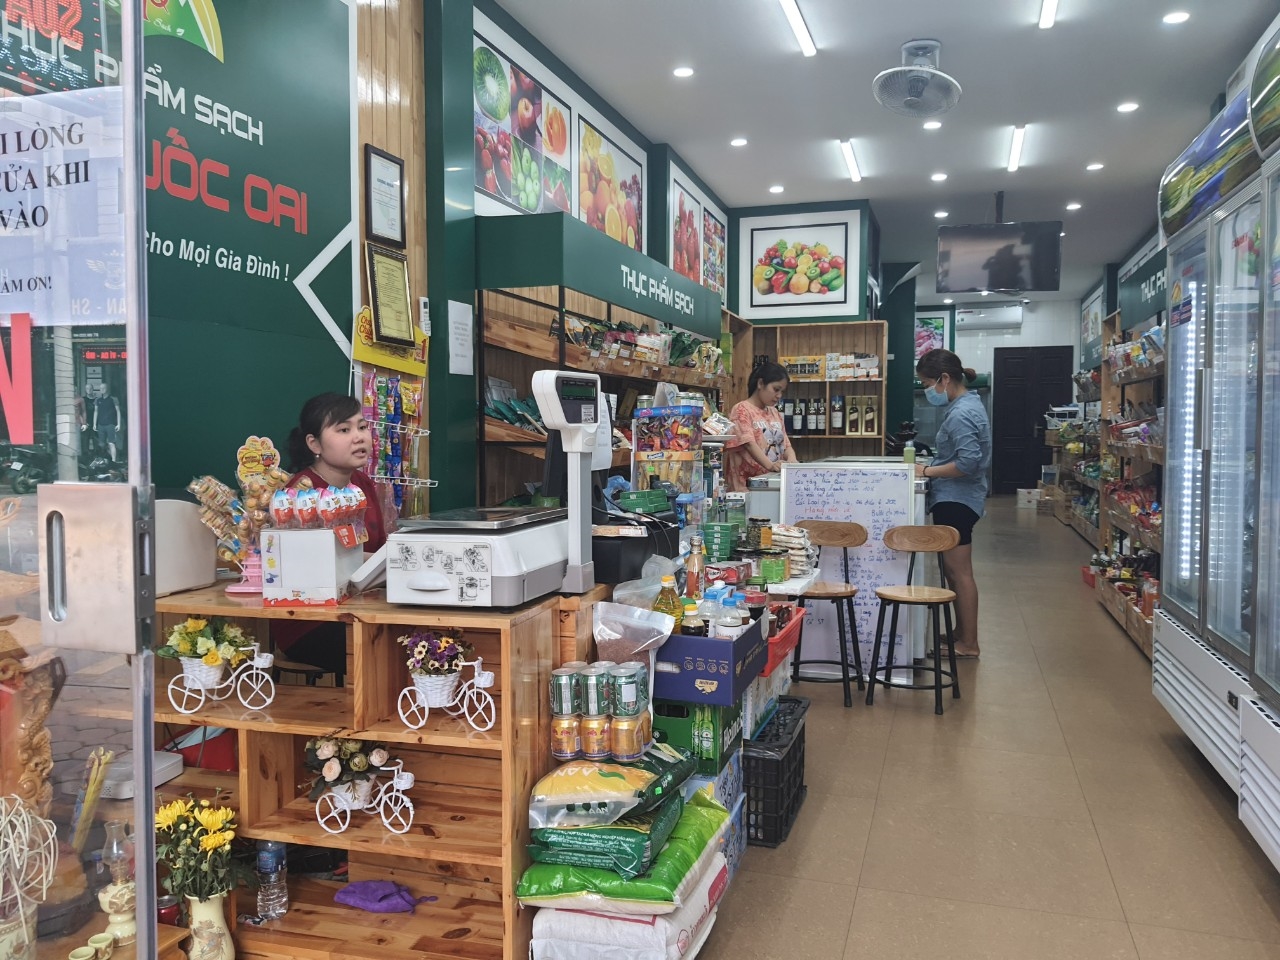  Điểm giới thiệu và bán sản phẩm OCOP tại Cửa hàng thực phẩm sạch Phủ Quốc Oai tại thị trấn Quốc Oai.